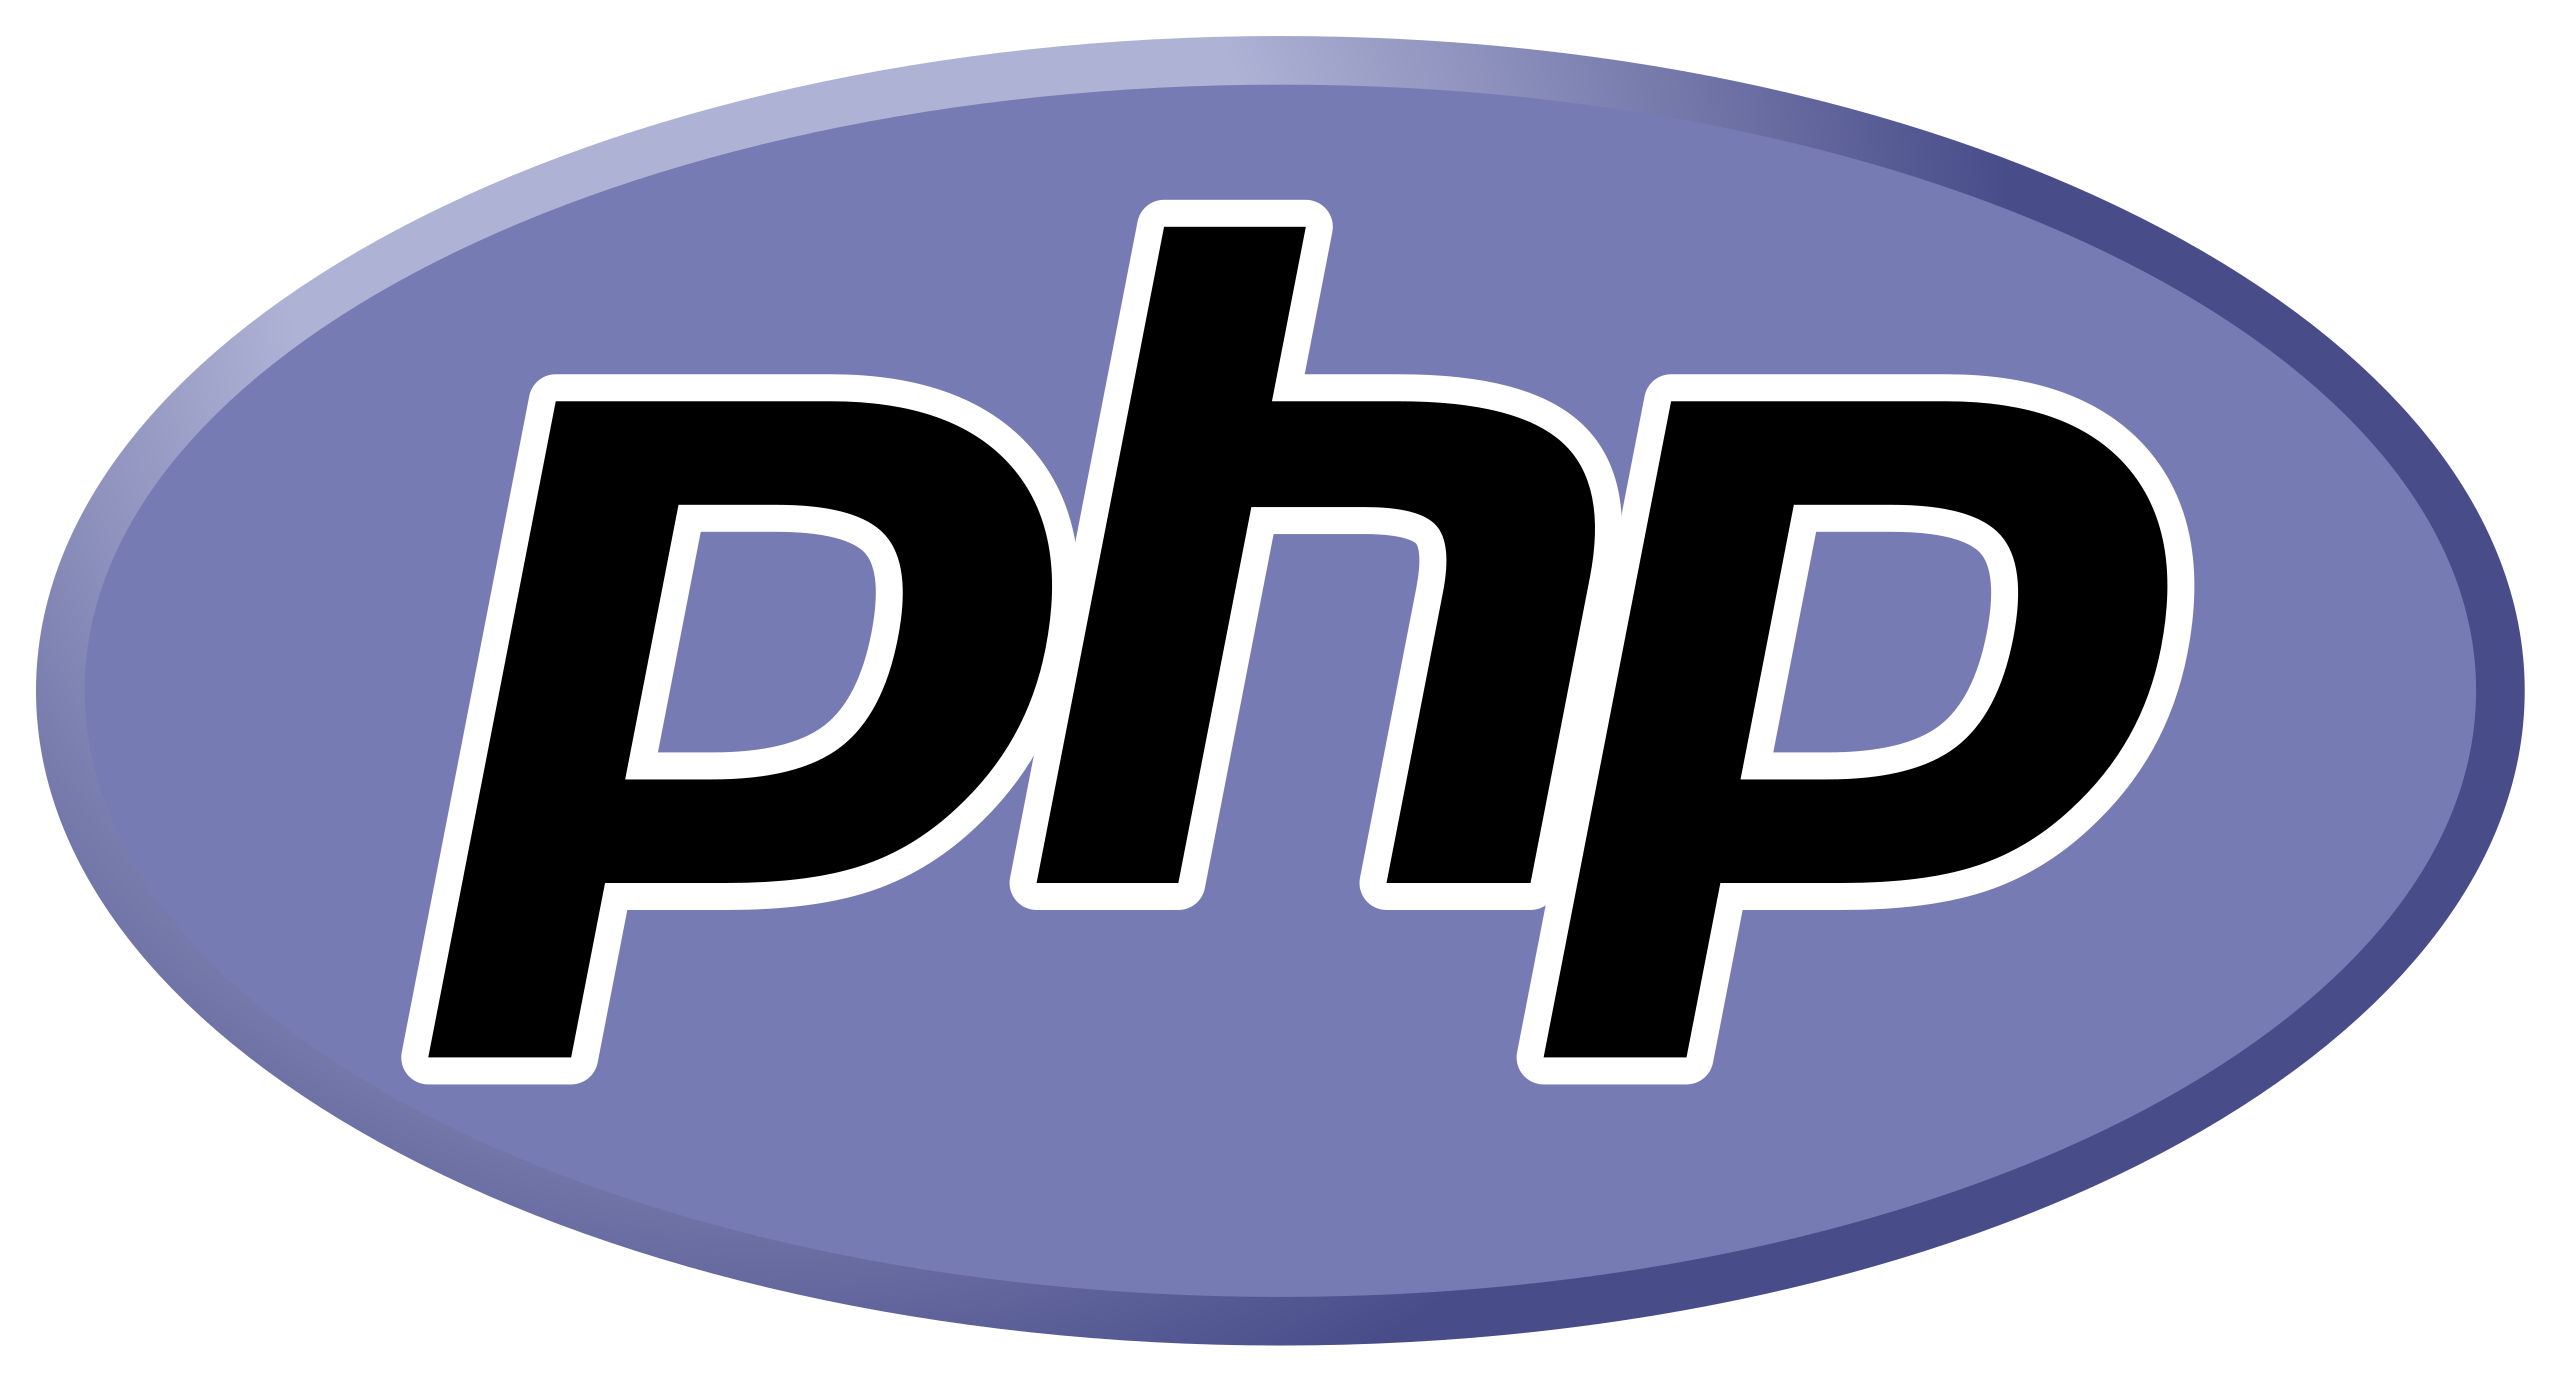 Php نهمین زبان در محبوب ترین زبان های برنامه نویسی در سال ۲۰۲۳